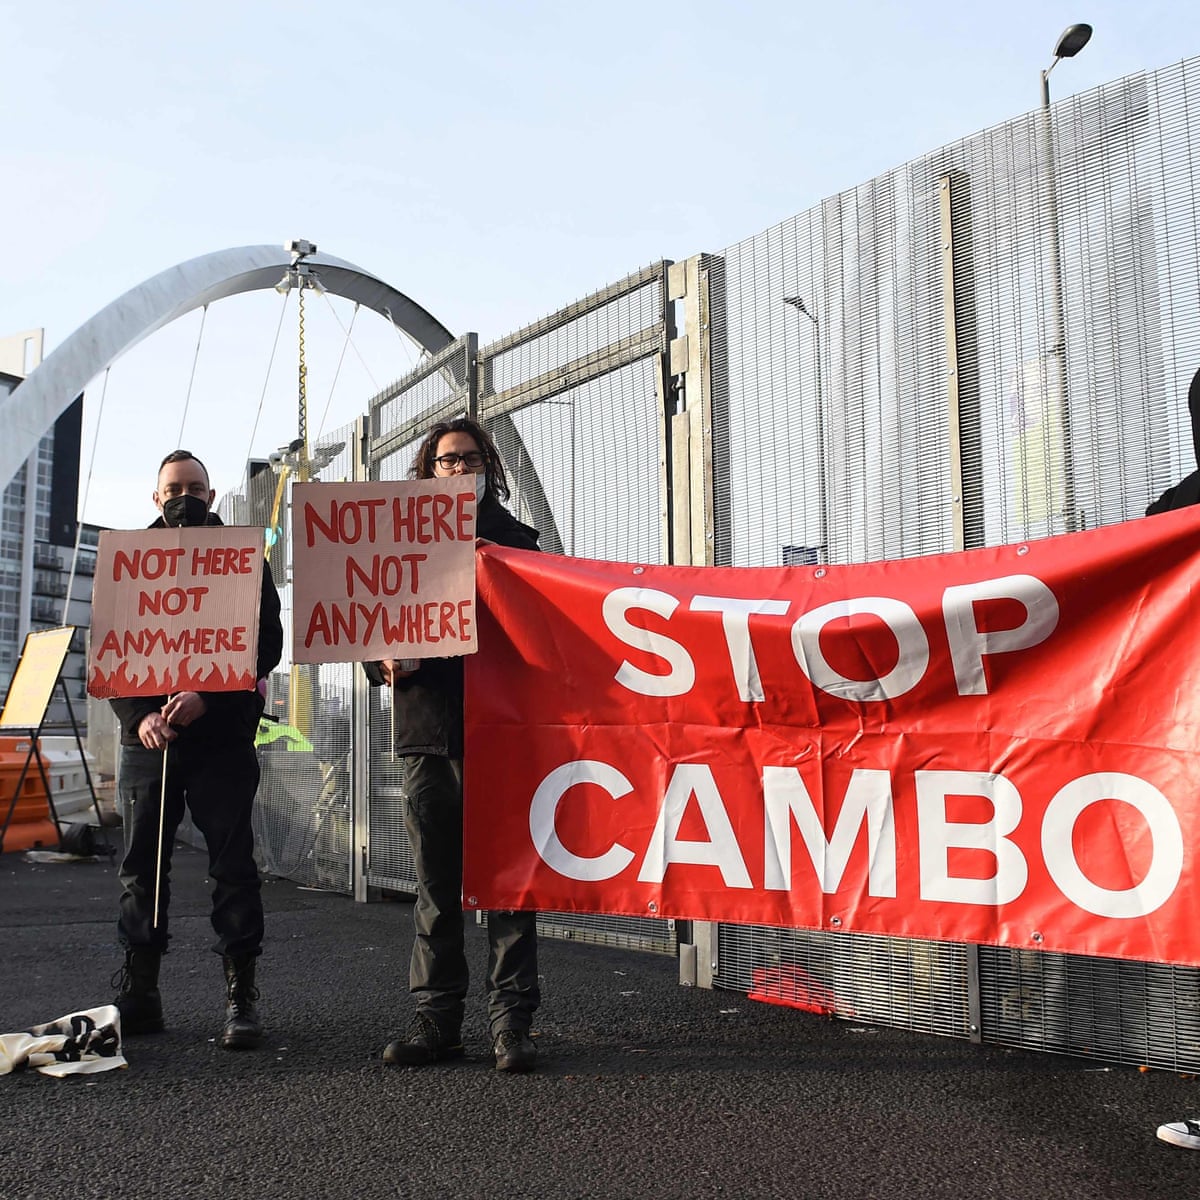 نشطاء يحتجون ضد حقل كامبو النفطي- نشطاء المناخ